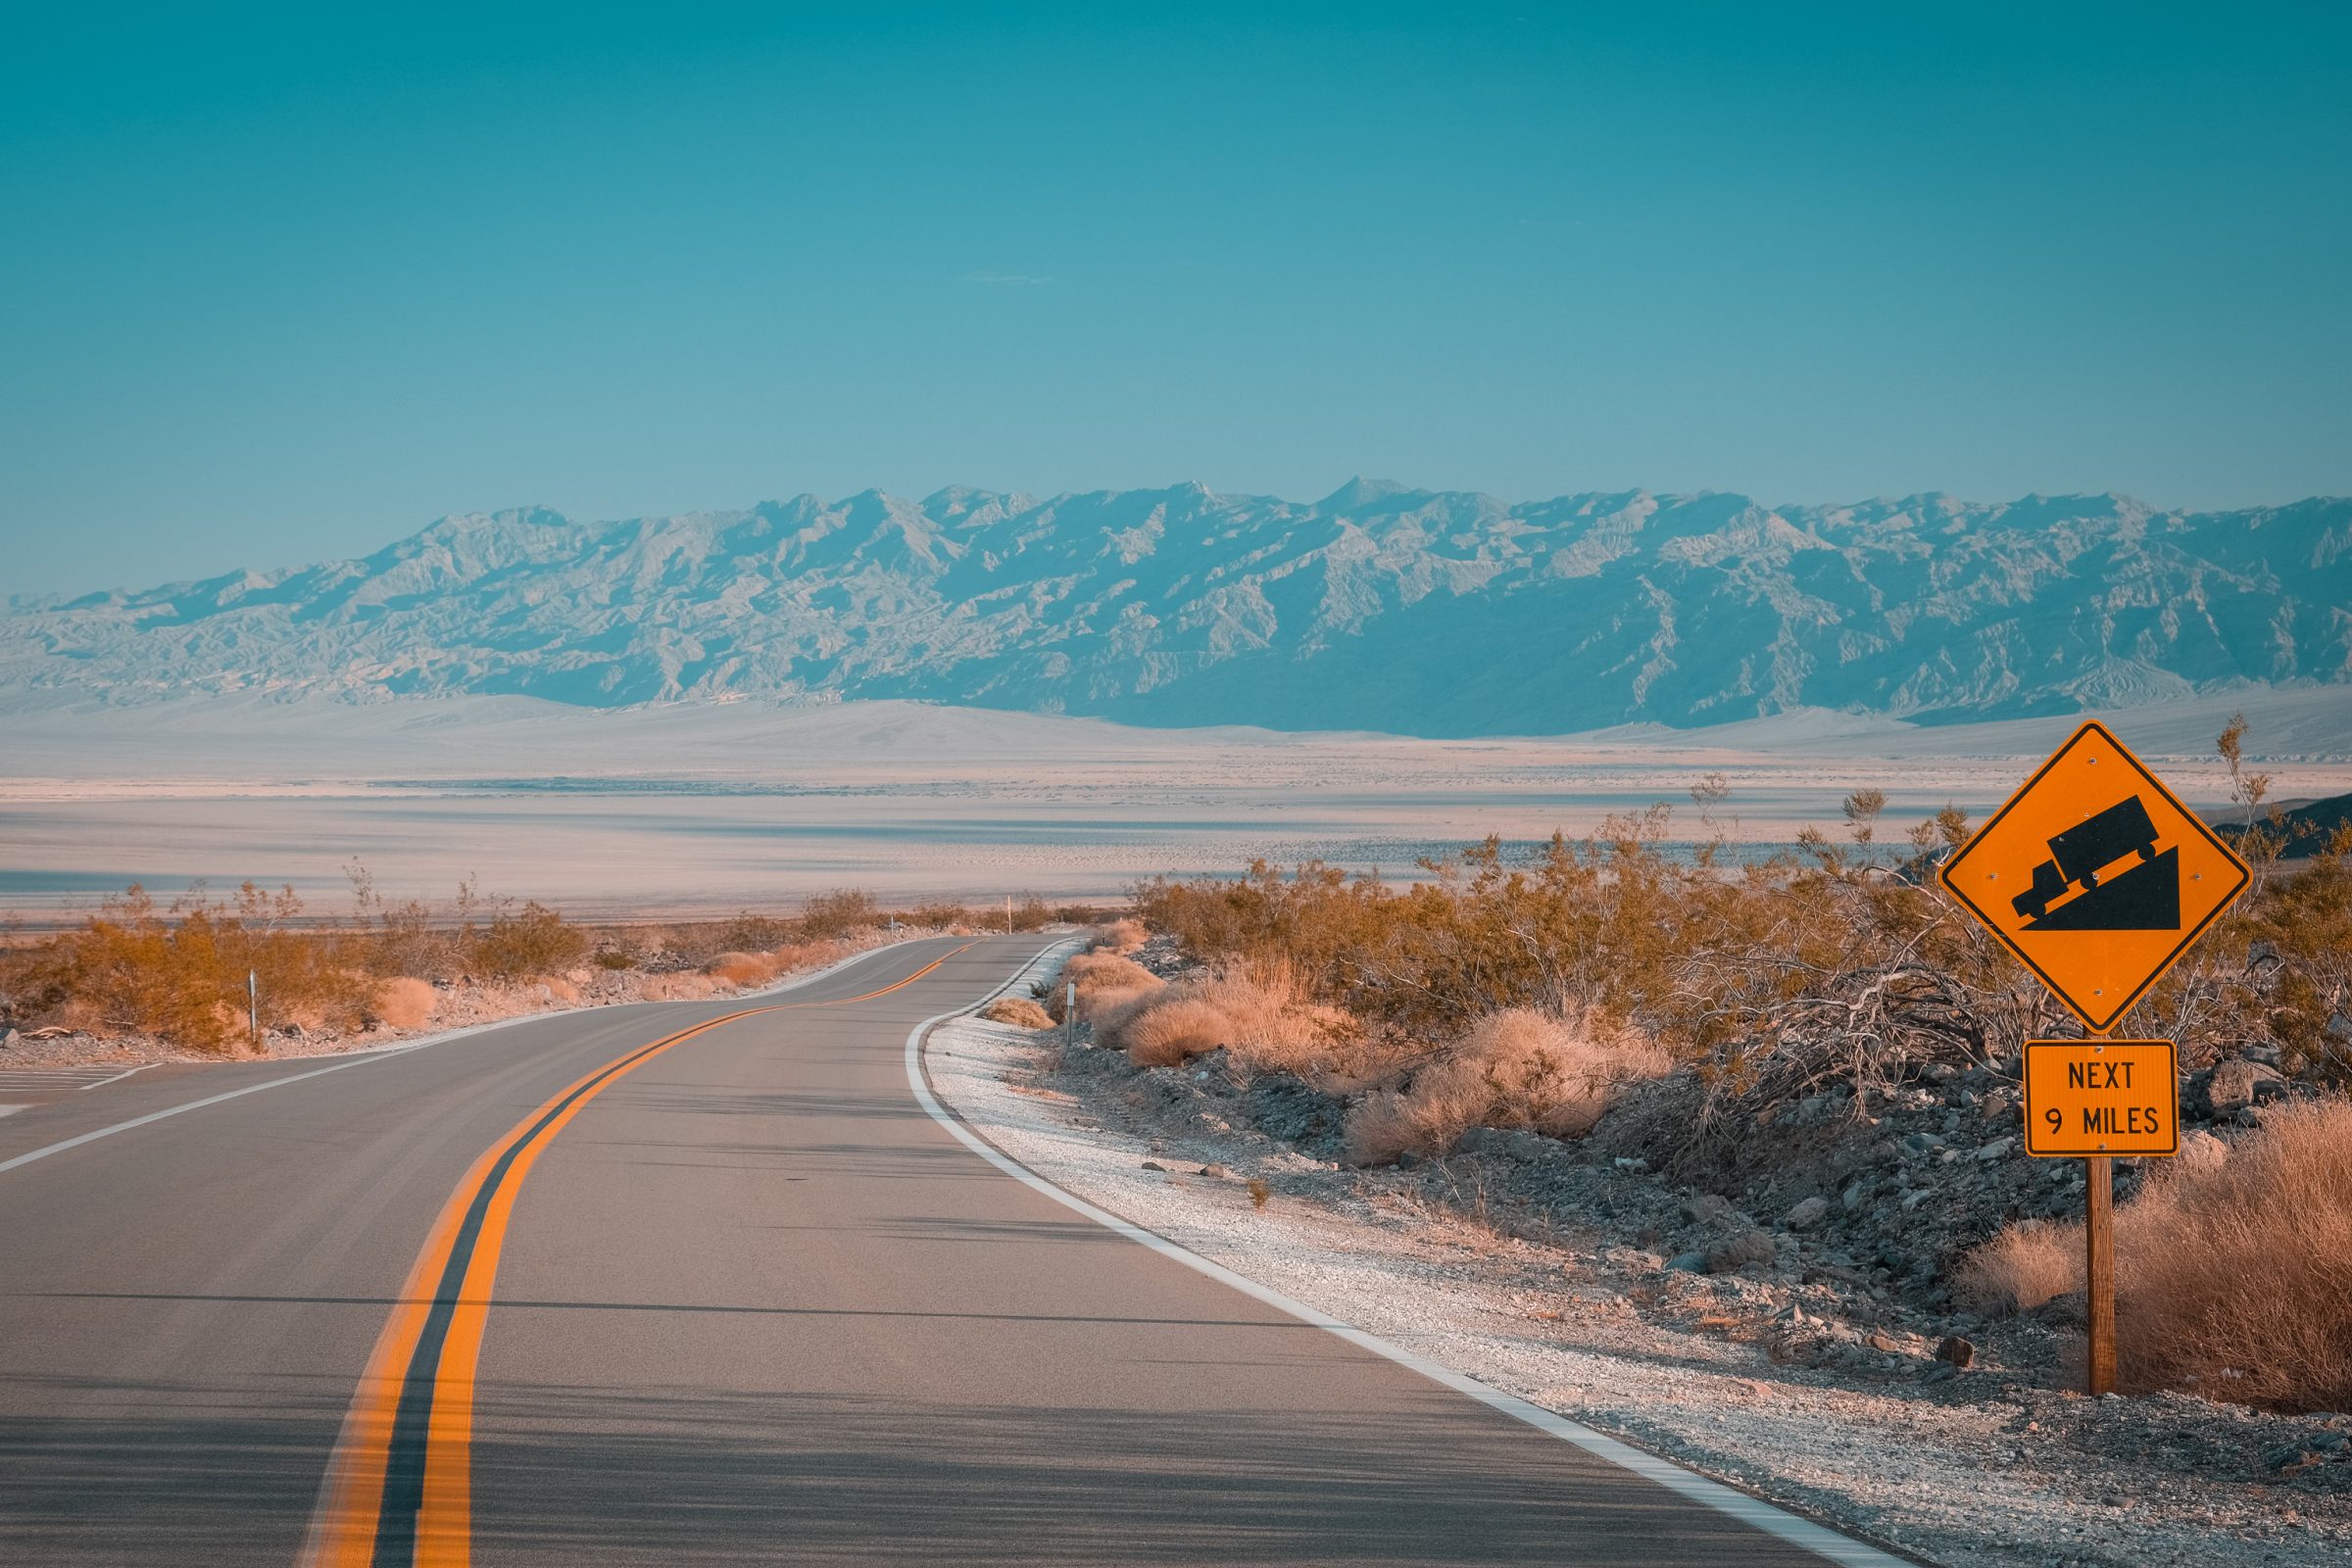 In Death Valley is de kans groot dat je motor heet wordt. Houd de temperatuur van je motor goed in de gaten.